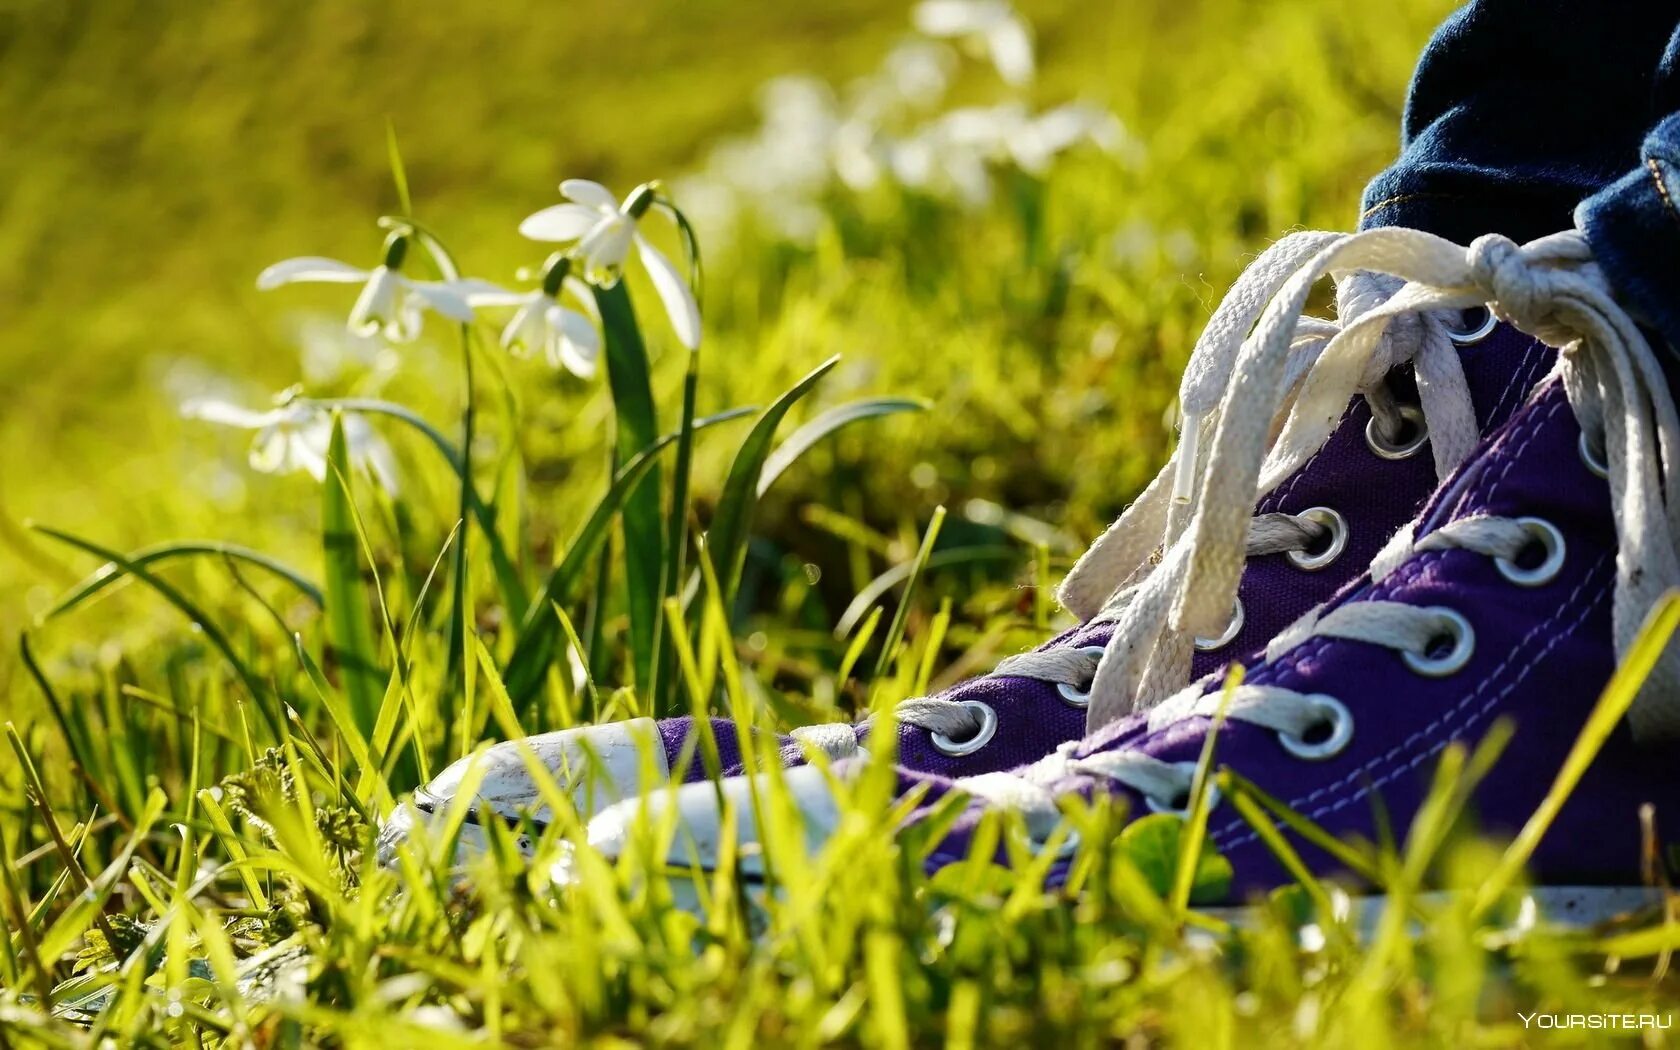 Кроссовки. Кеды на природе. Ноги в кроссовках на траве. Кеды на траве.